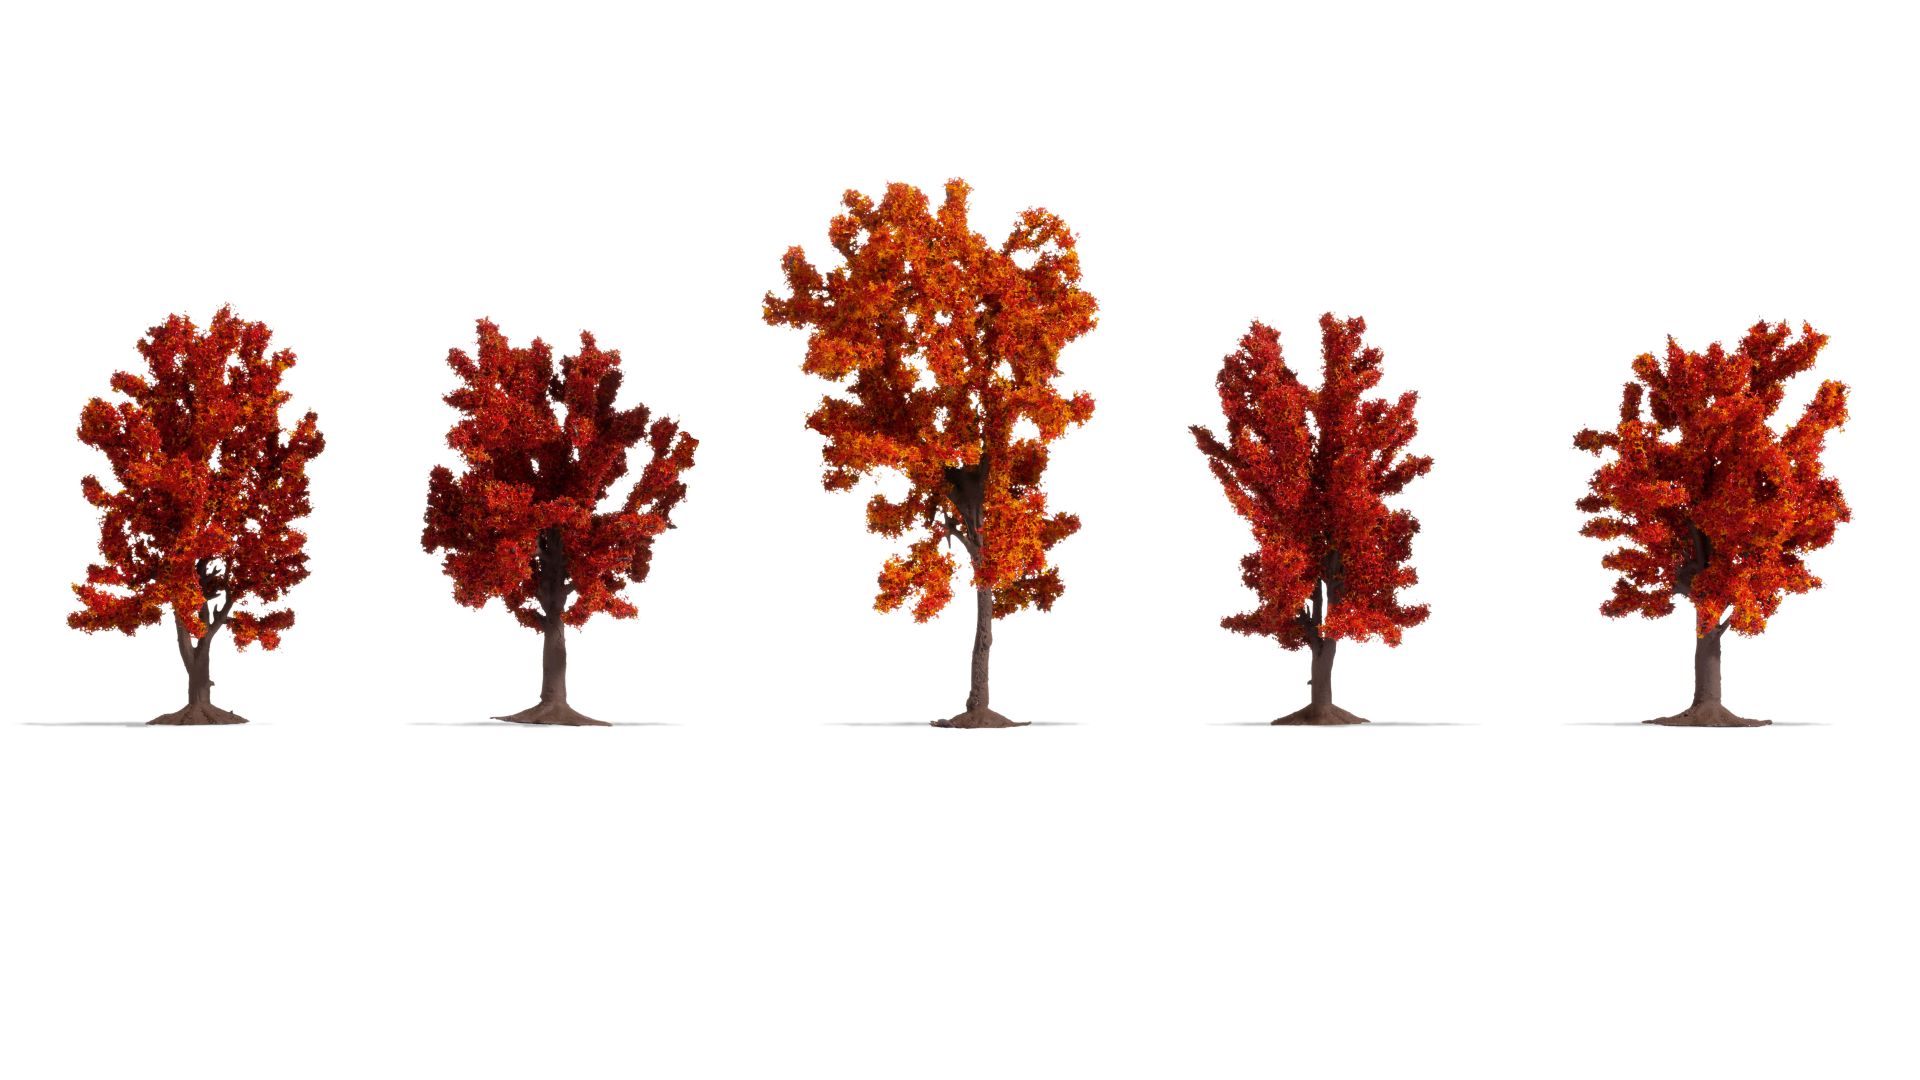 Herbstbäume mit roter Foliage 5 Stück, ca. 8-10 cm hoch